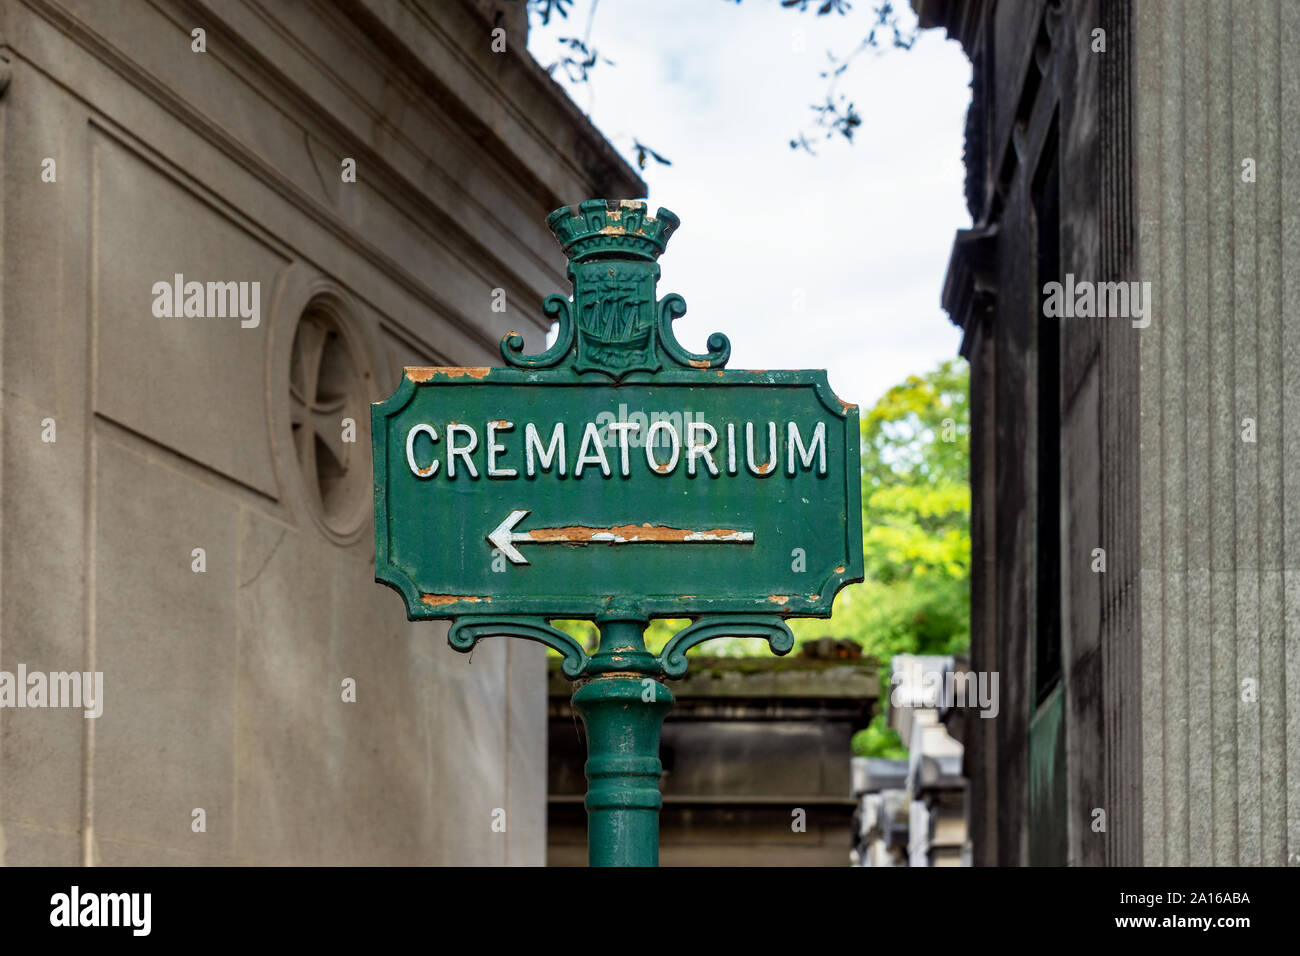 Crematorium sign in Pere Lachaise Cemetery - Paris, France Stock Photo